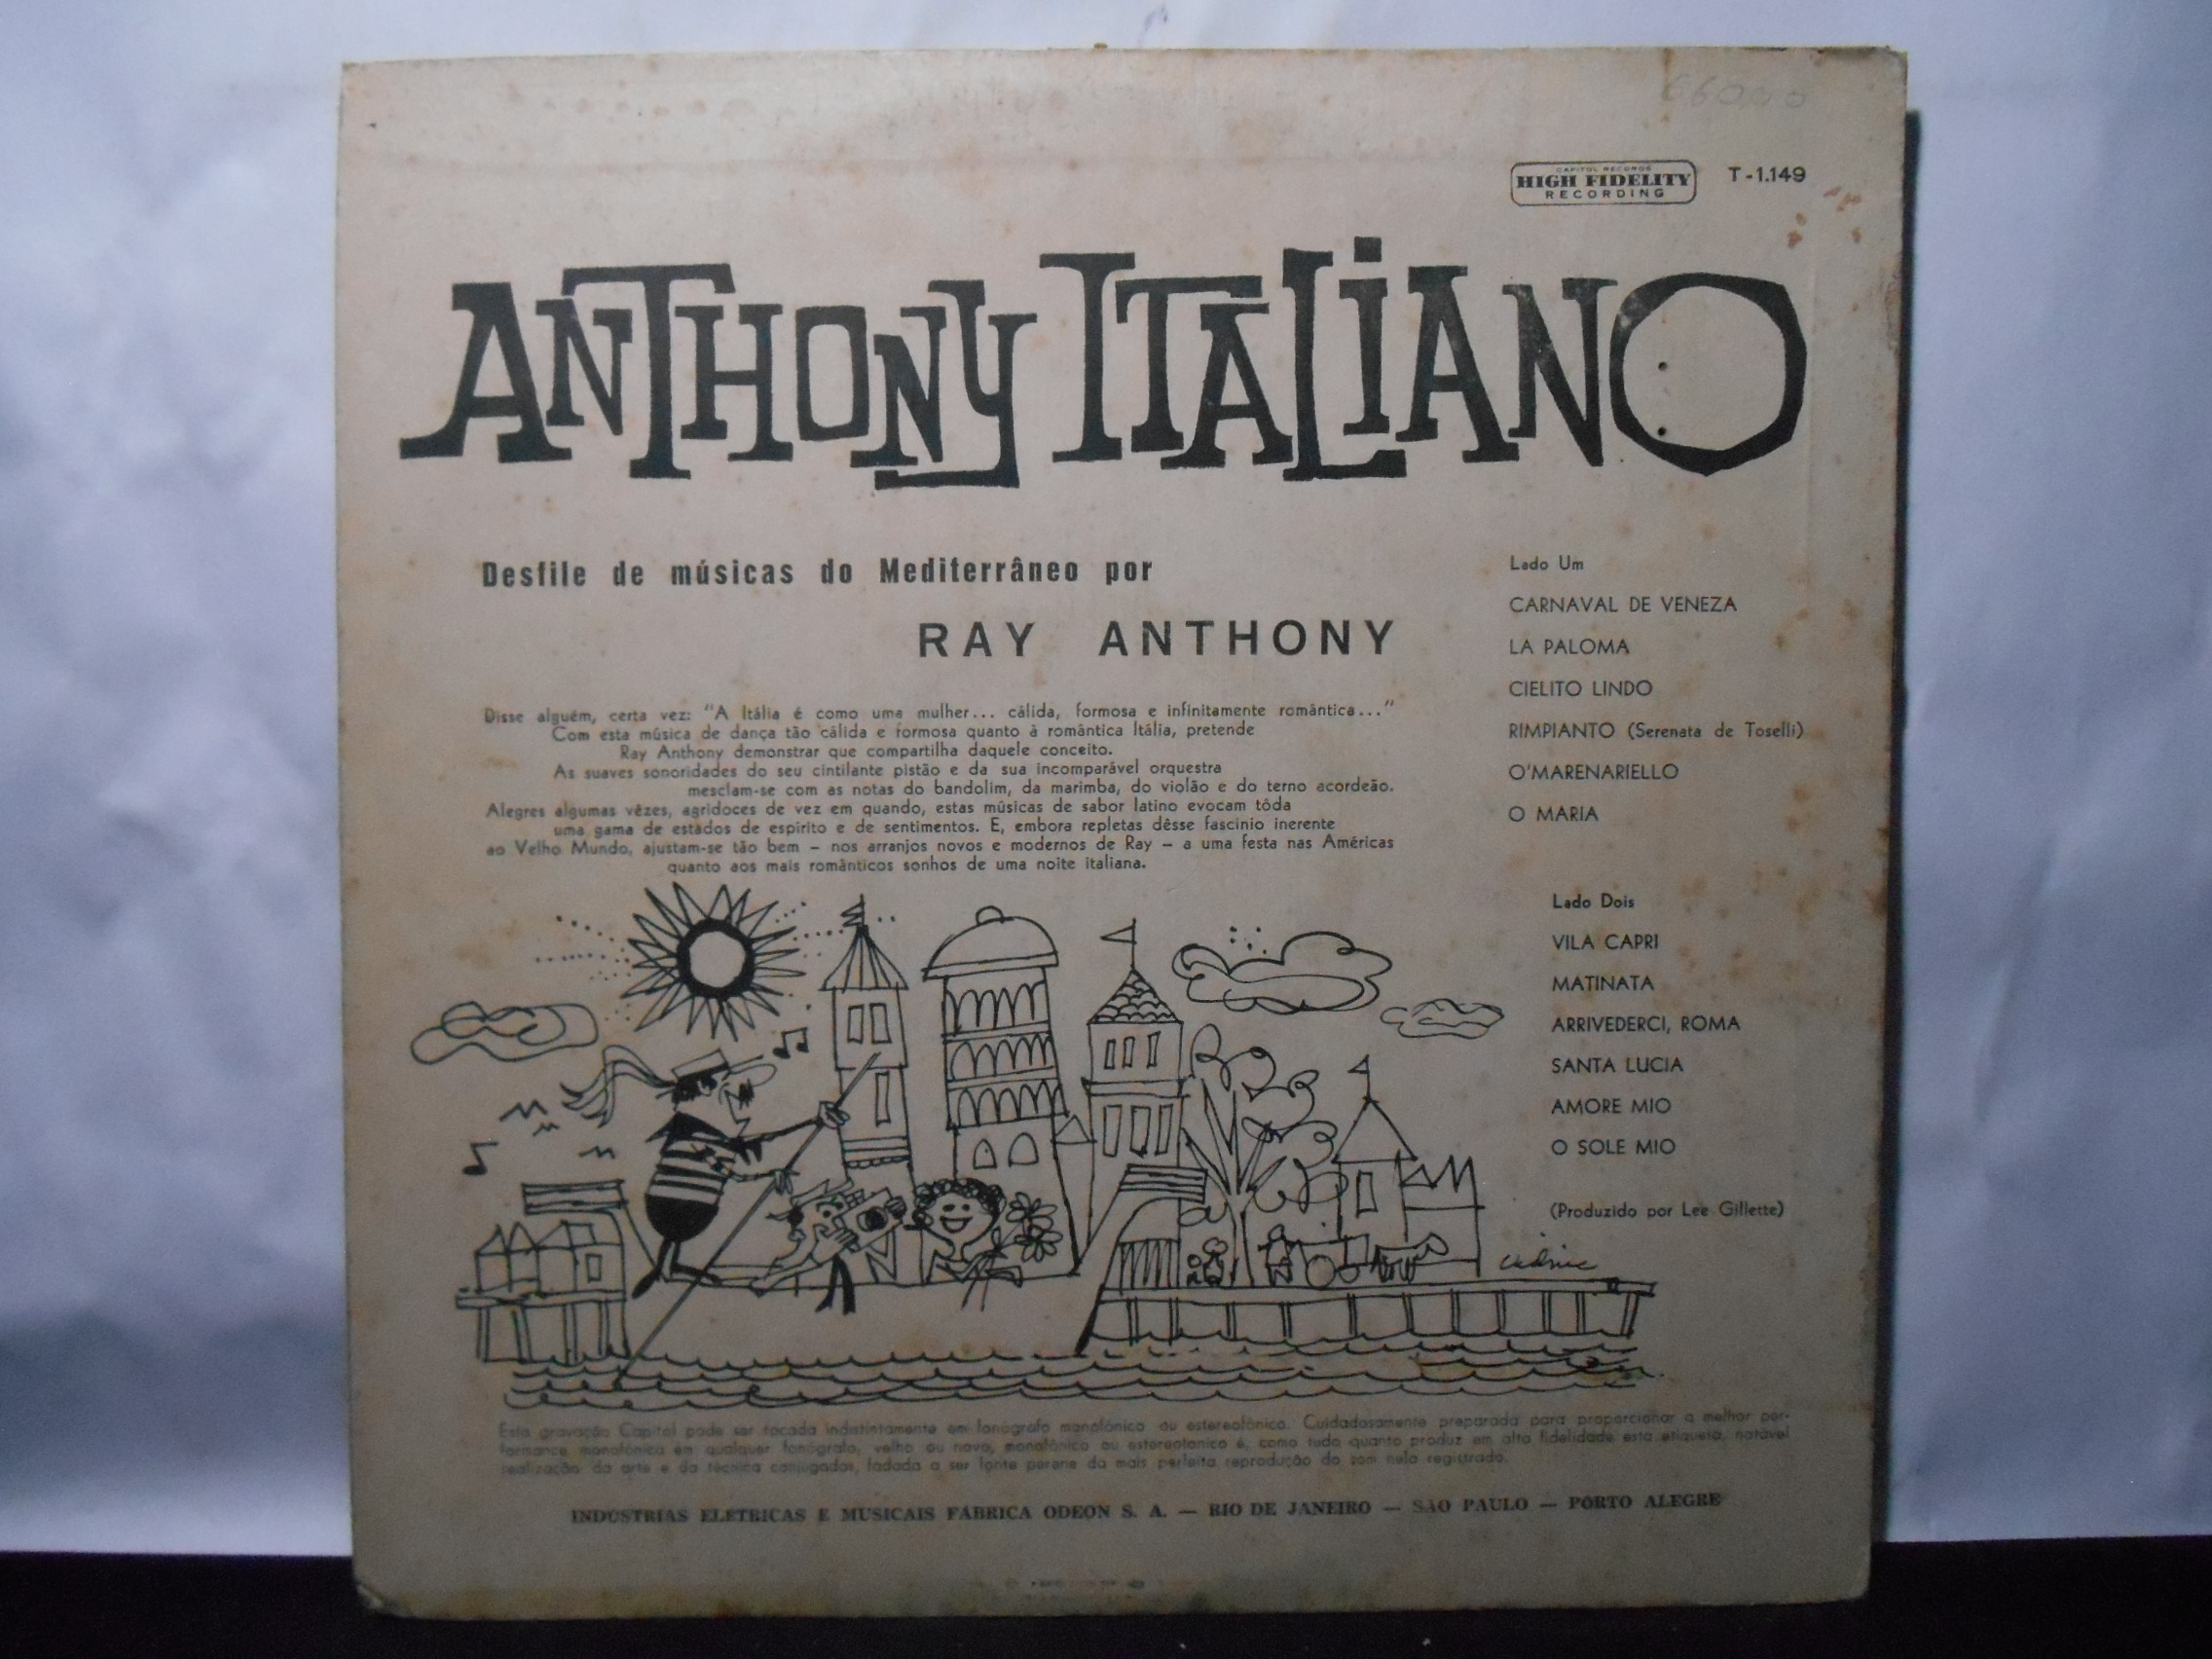 Vinil - Ray Anthony e sua Orquestra - Anthony Italiano